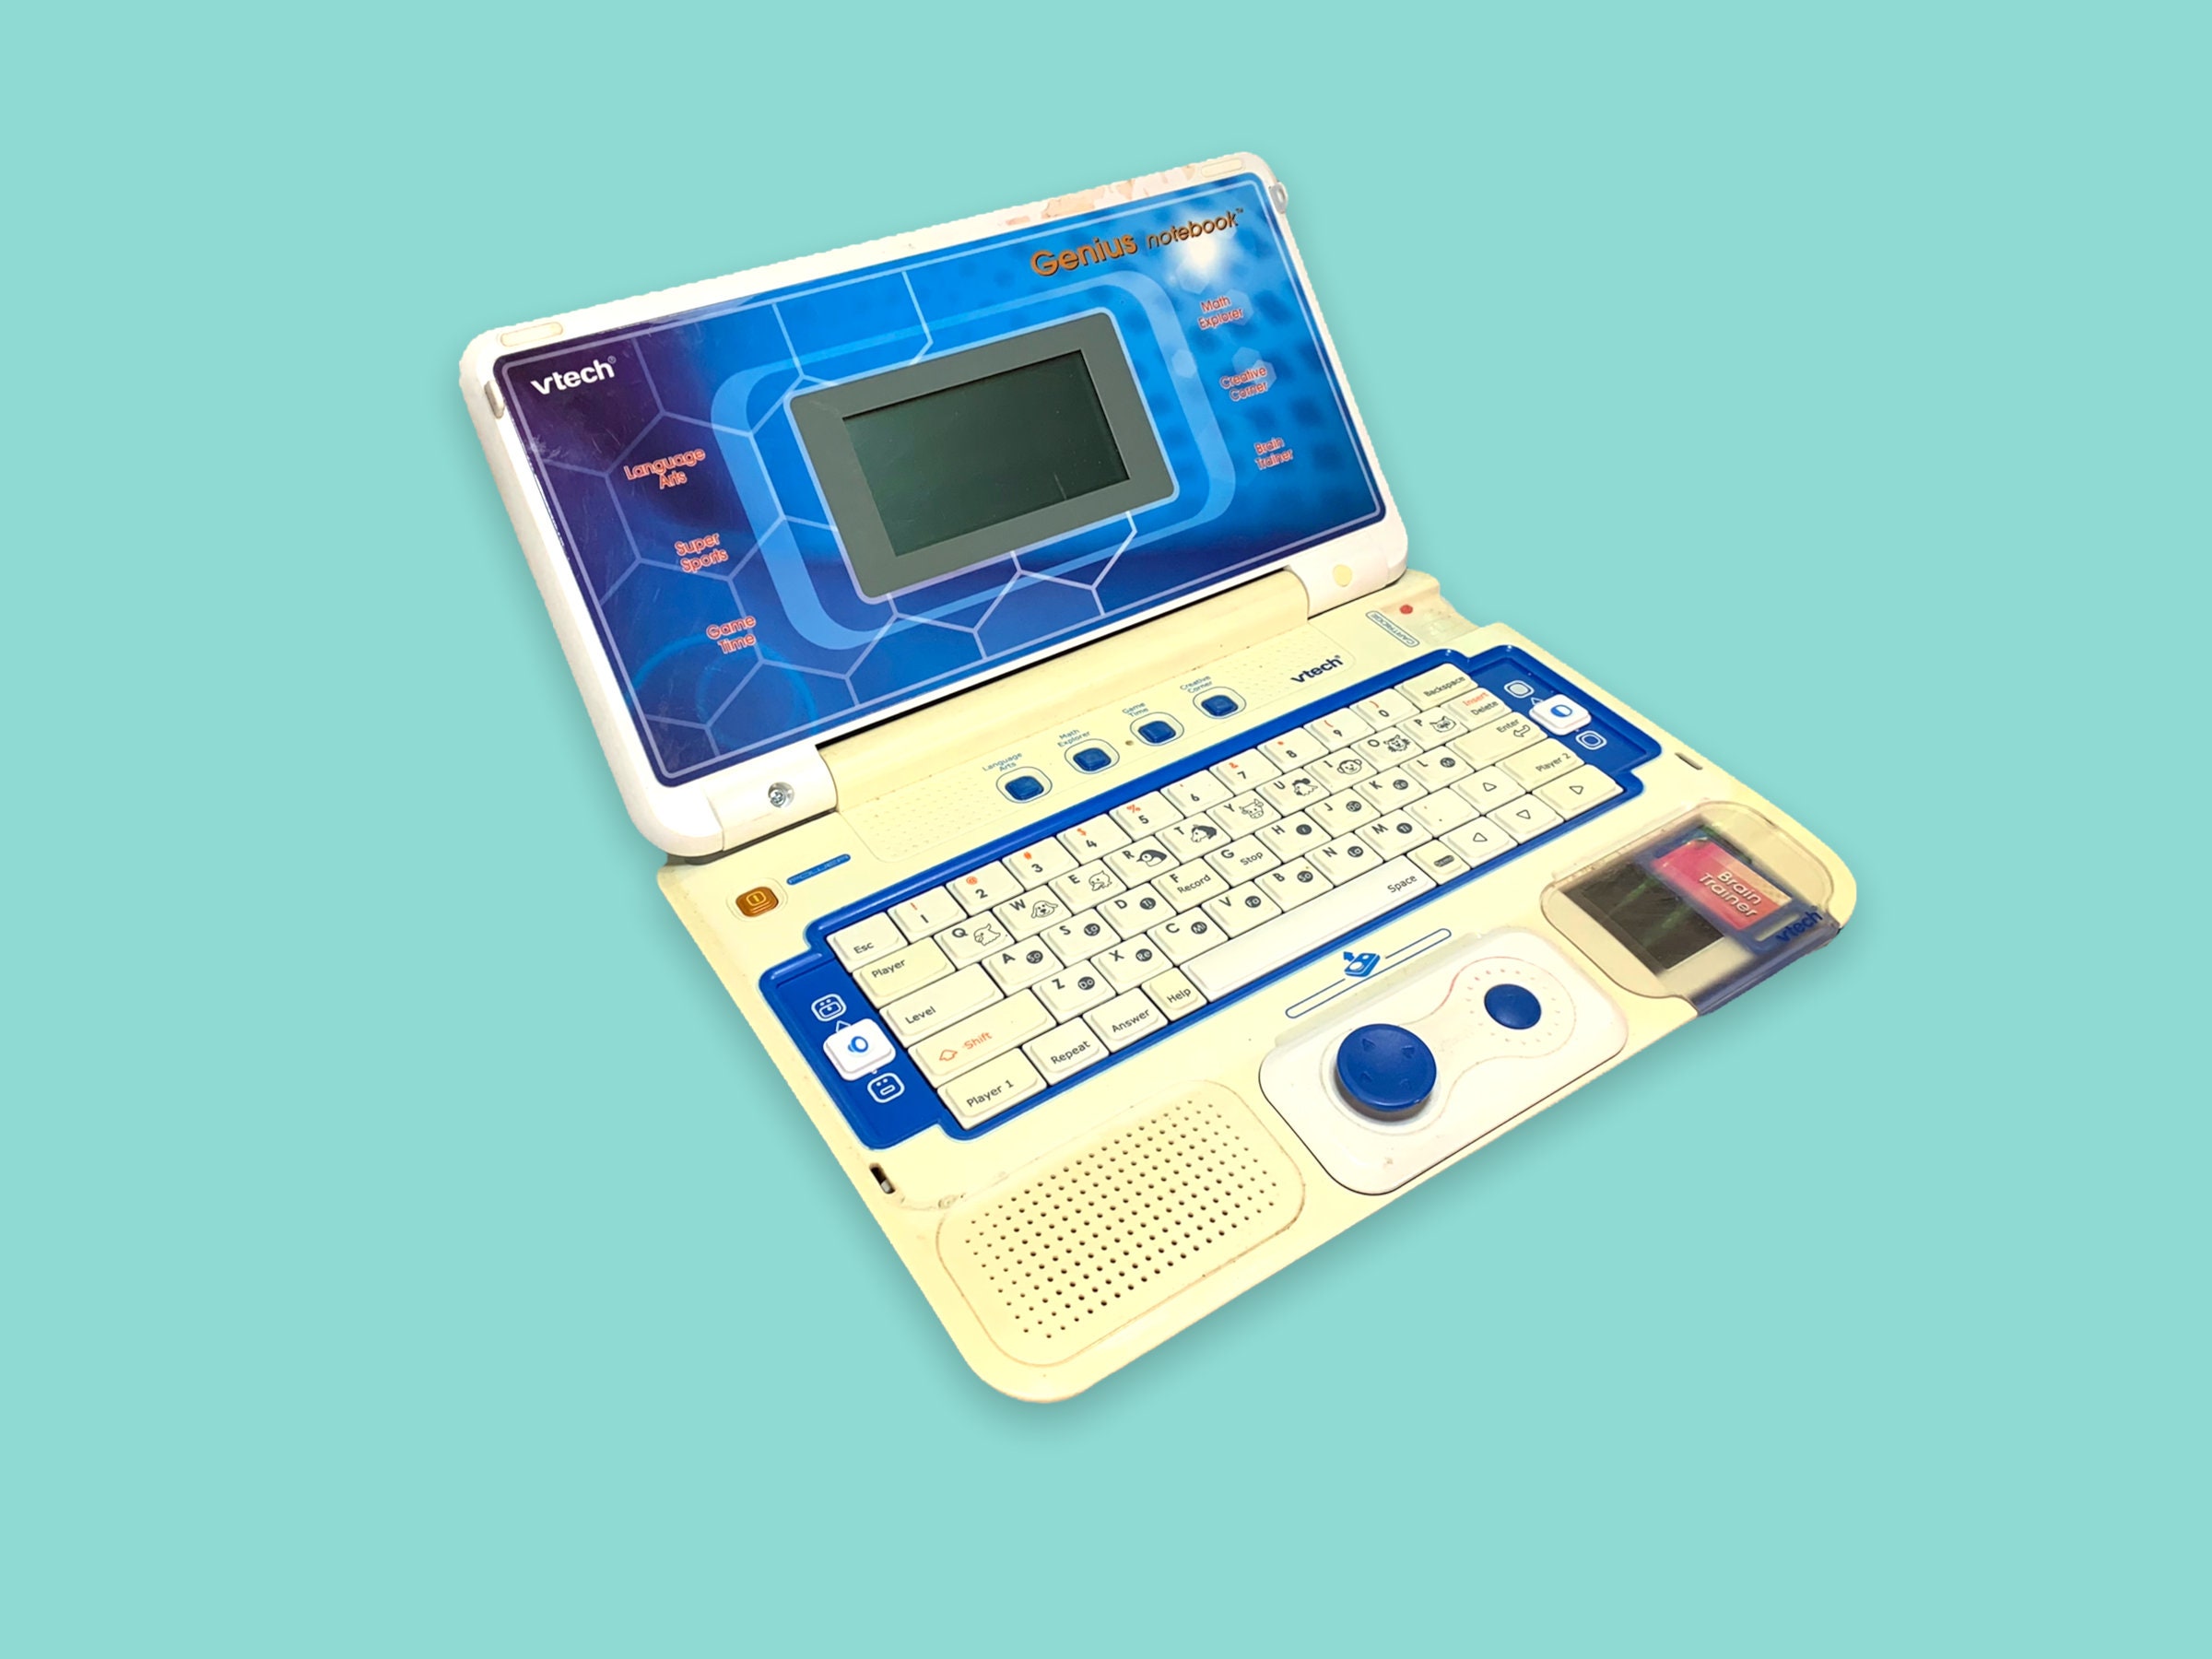 Vtech Laptops : r/nostalgia